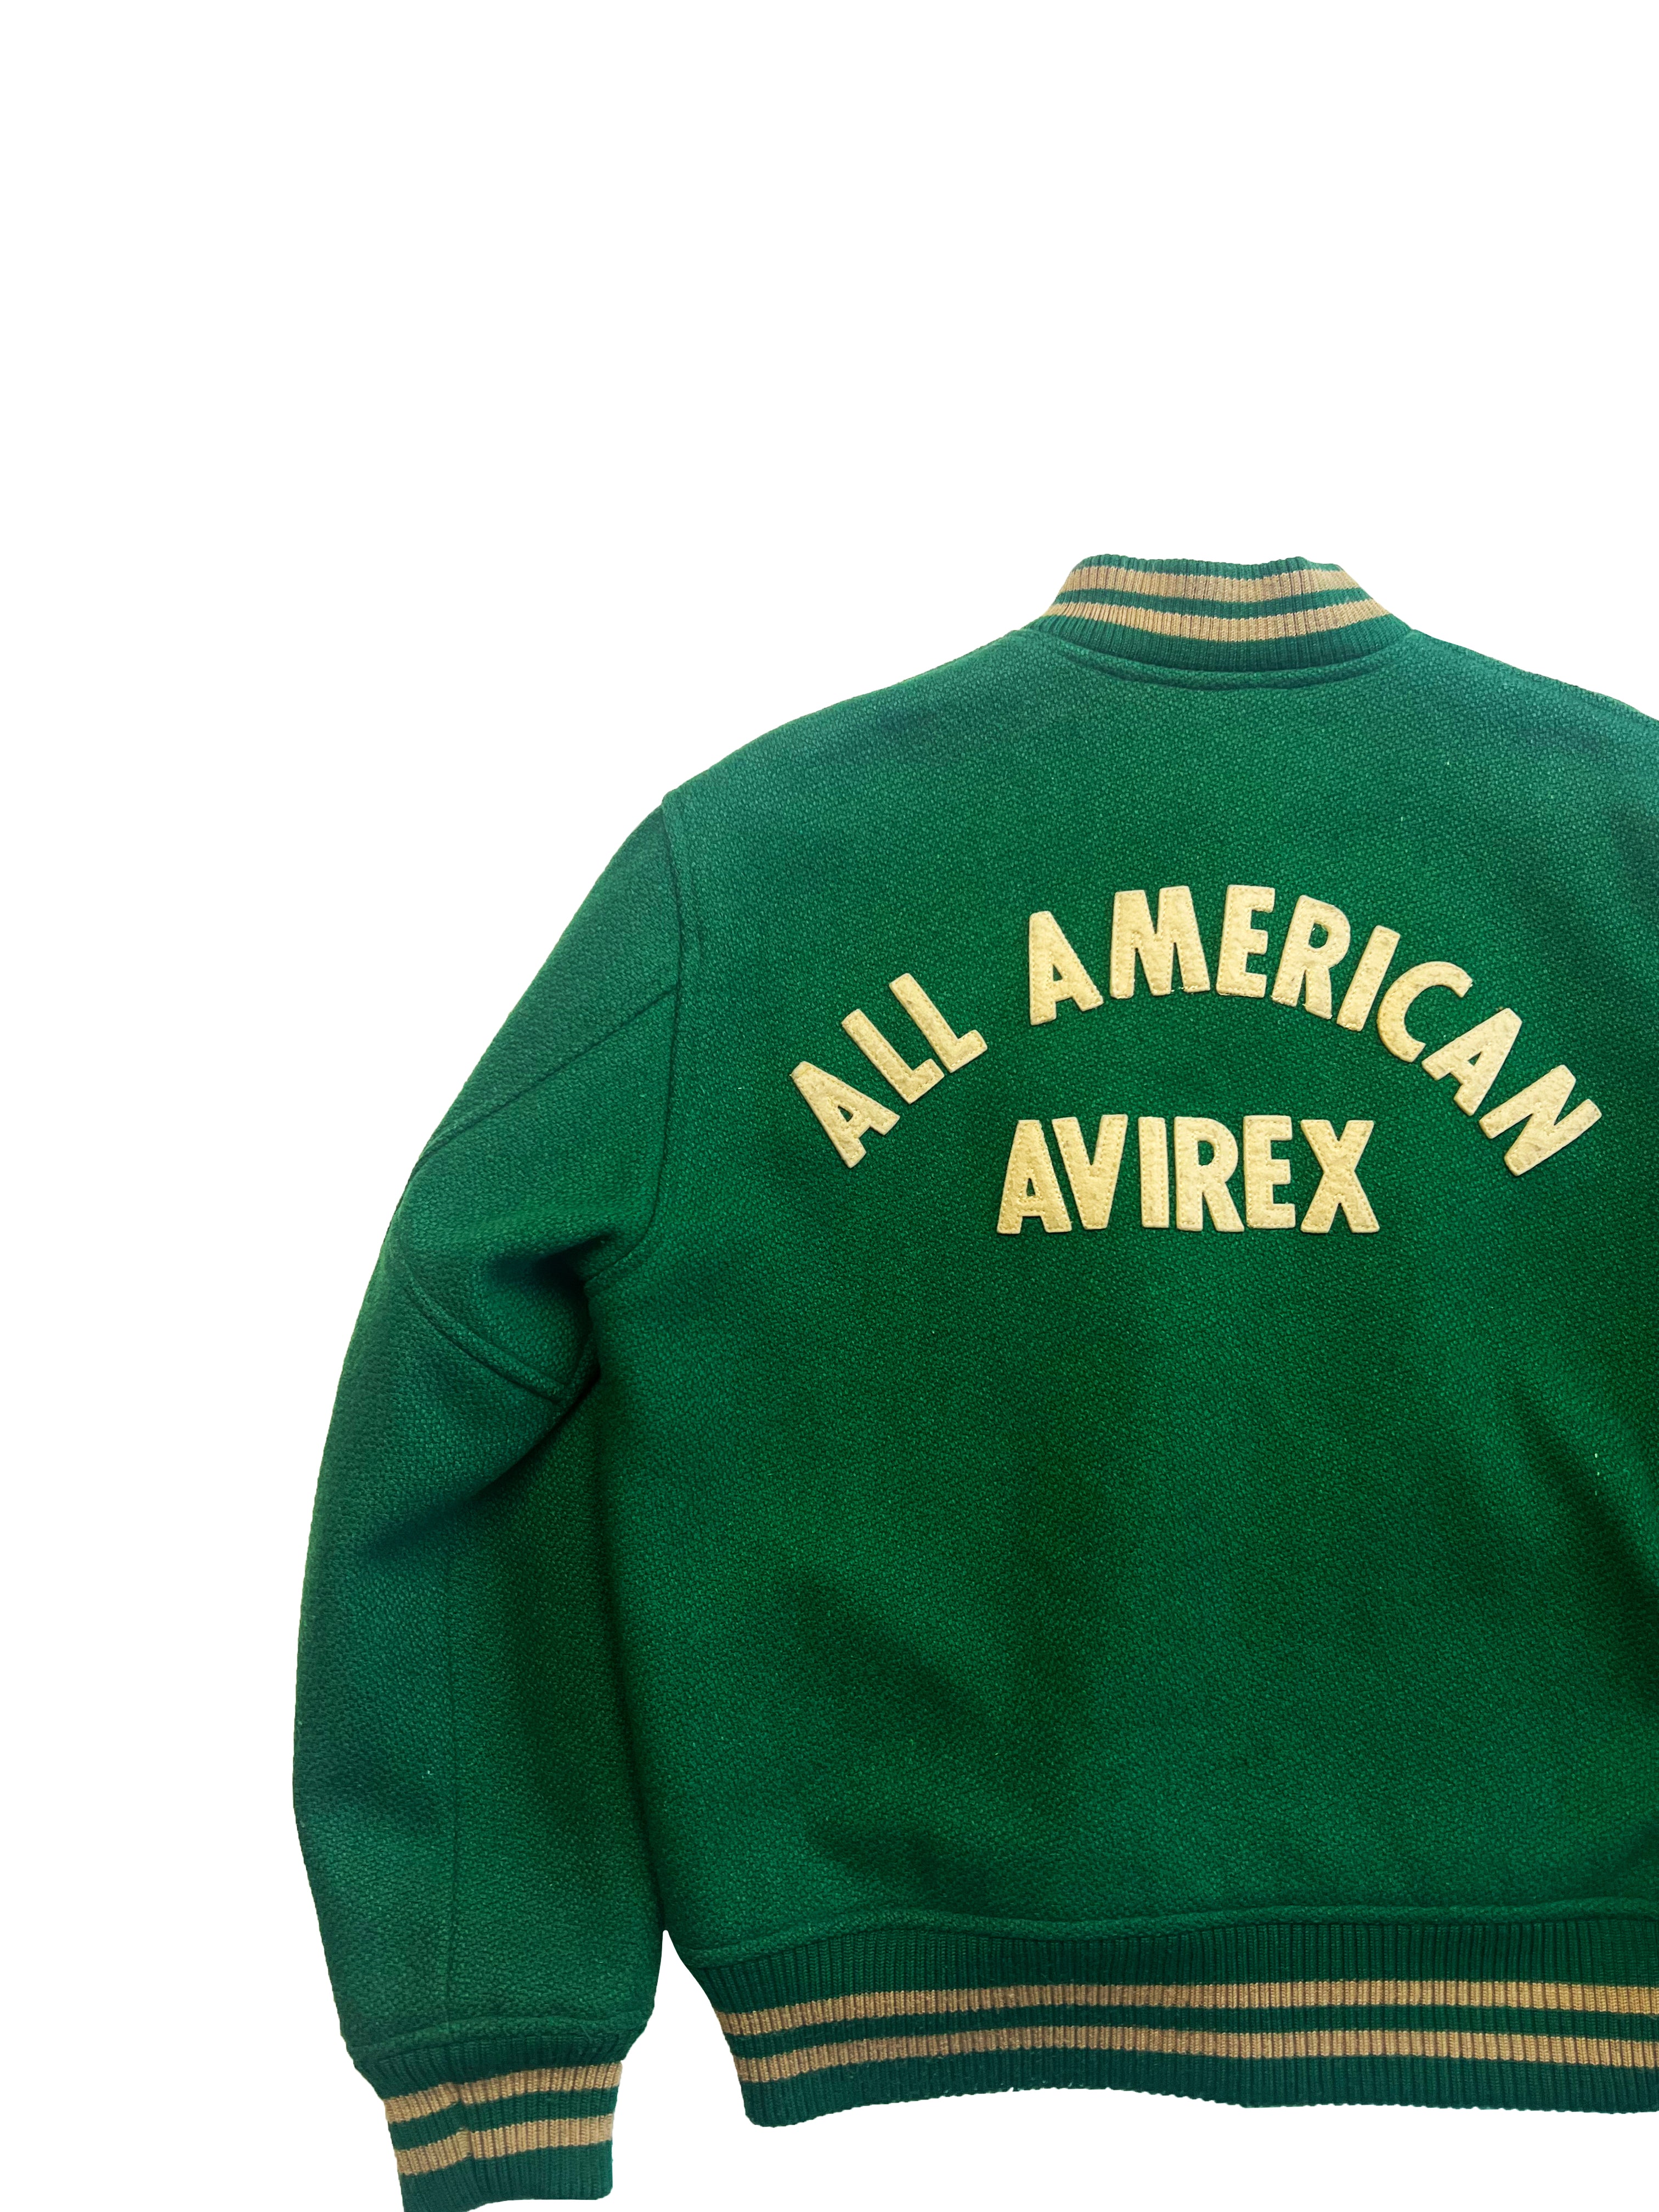 Avirex 'All American' Green Bomber 80's